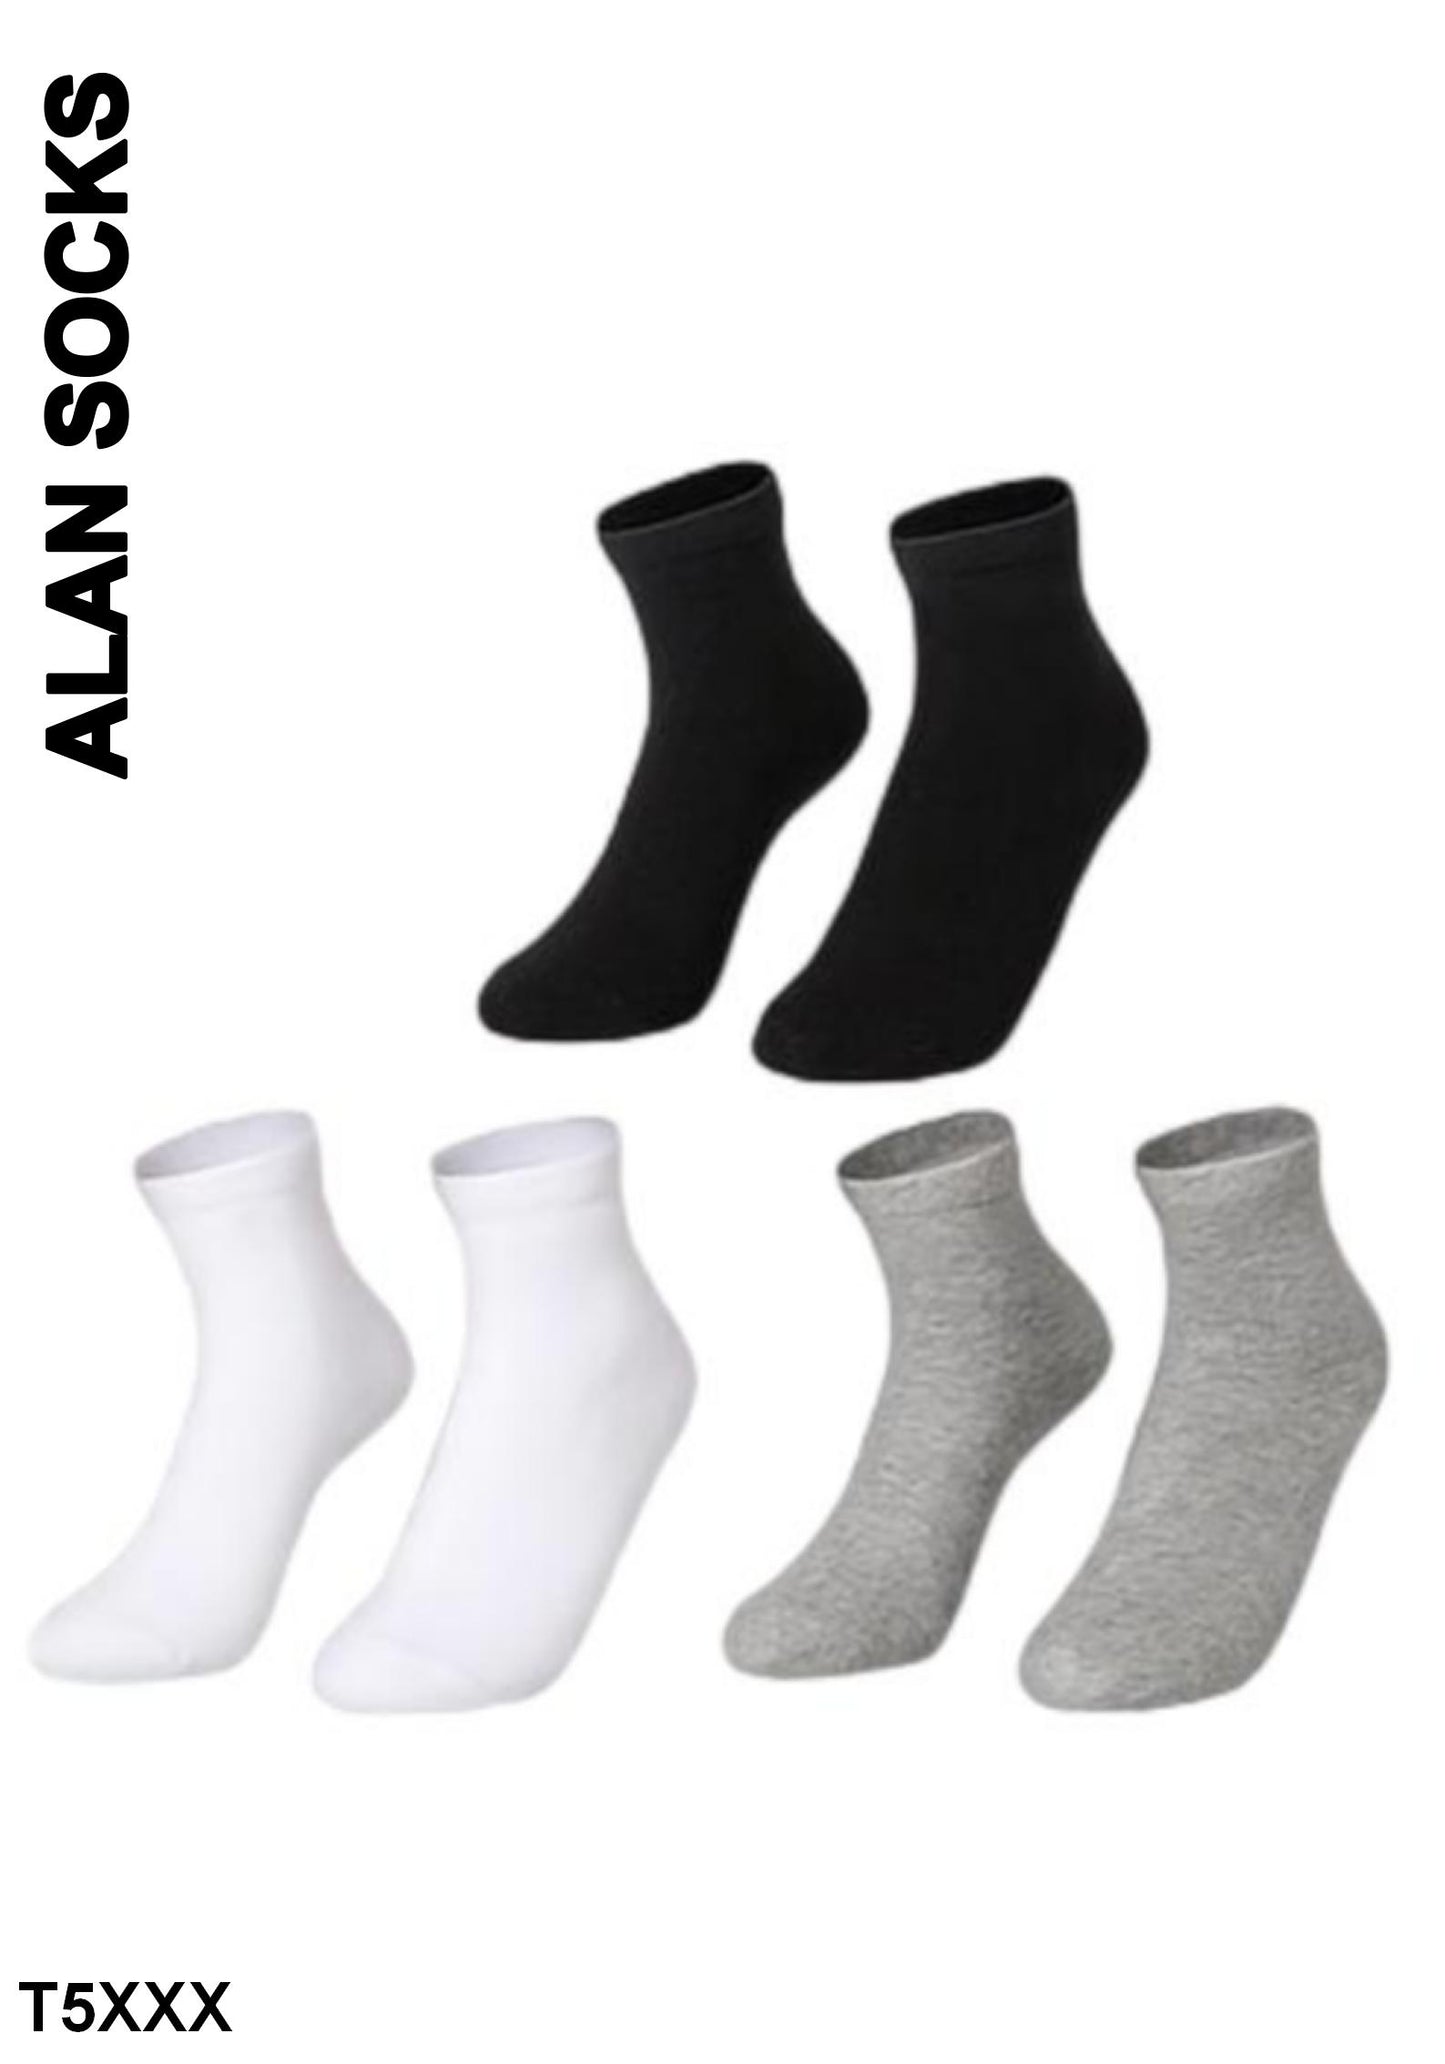 Alansocks calze di cotone alla caviglia da 3paia - T5XXX